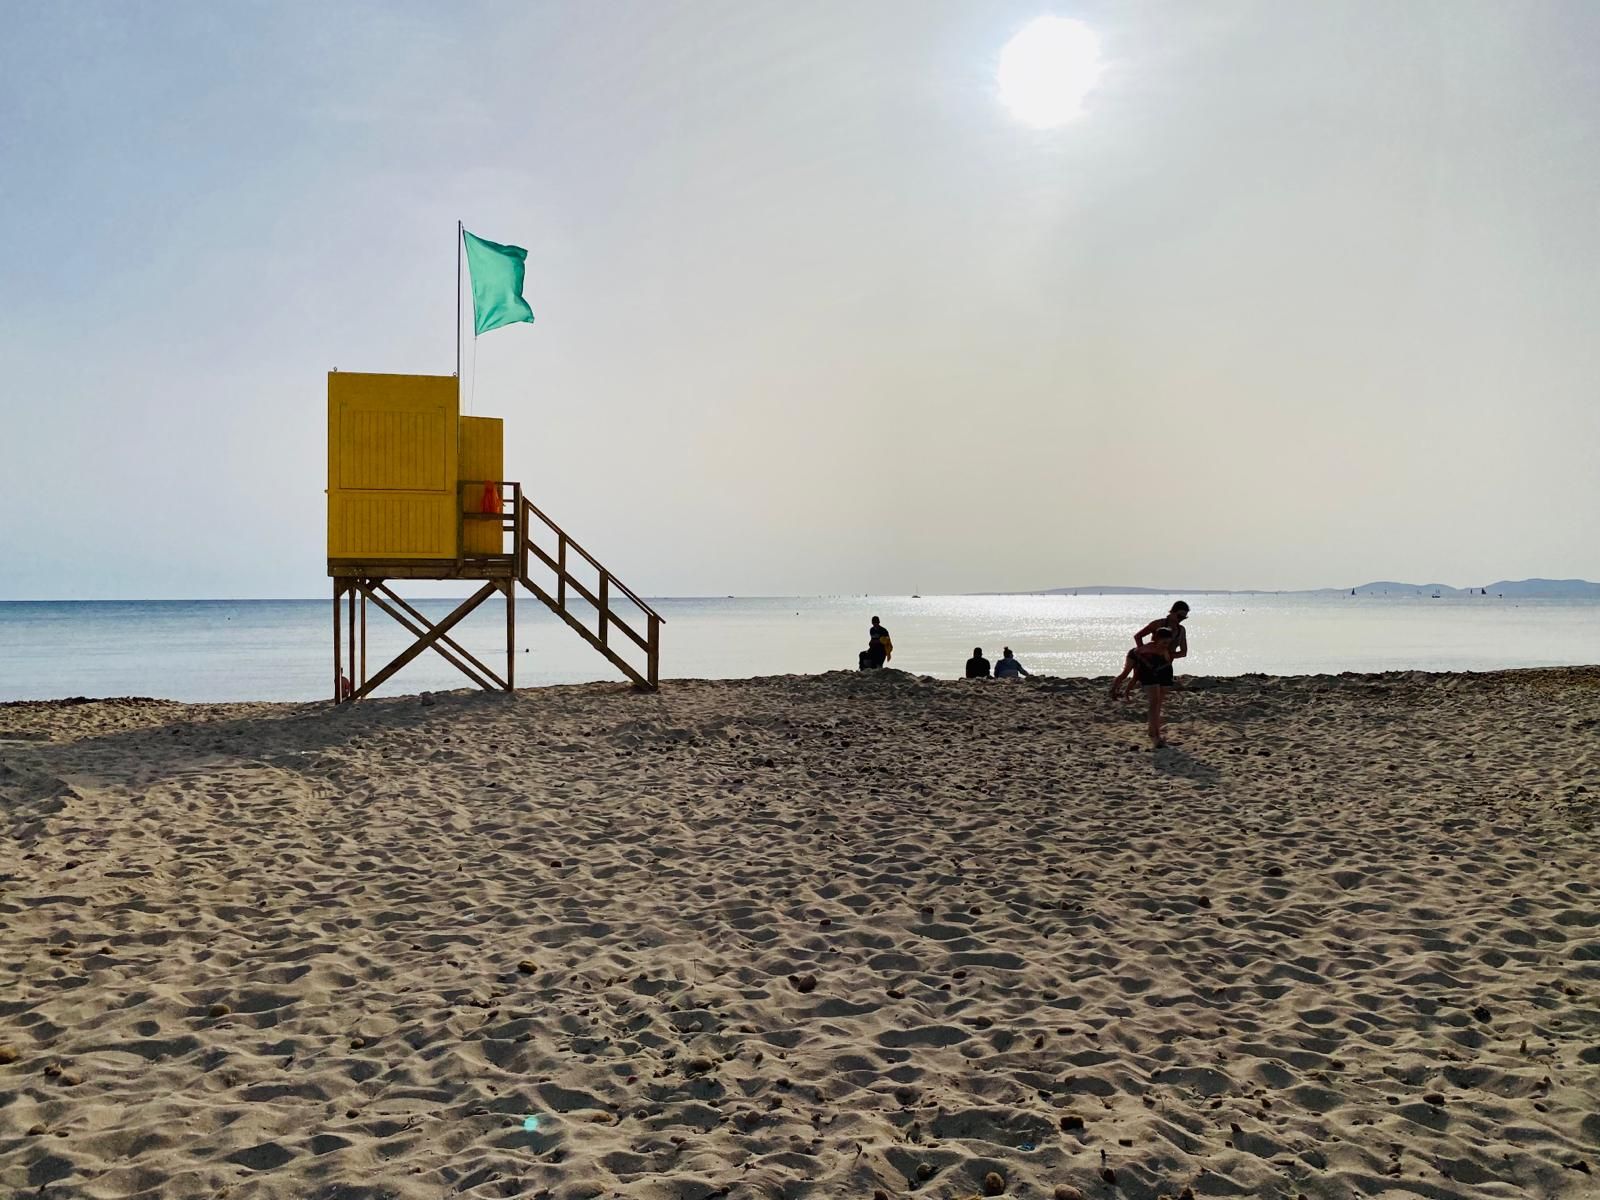 Bereit machen für die Mallorca-Urlauber – so sieht es gerade an der Playa de Palma aus